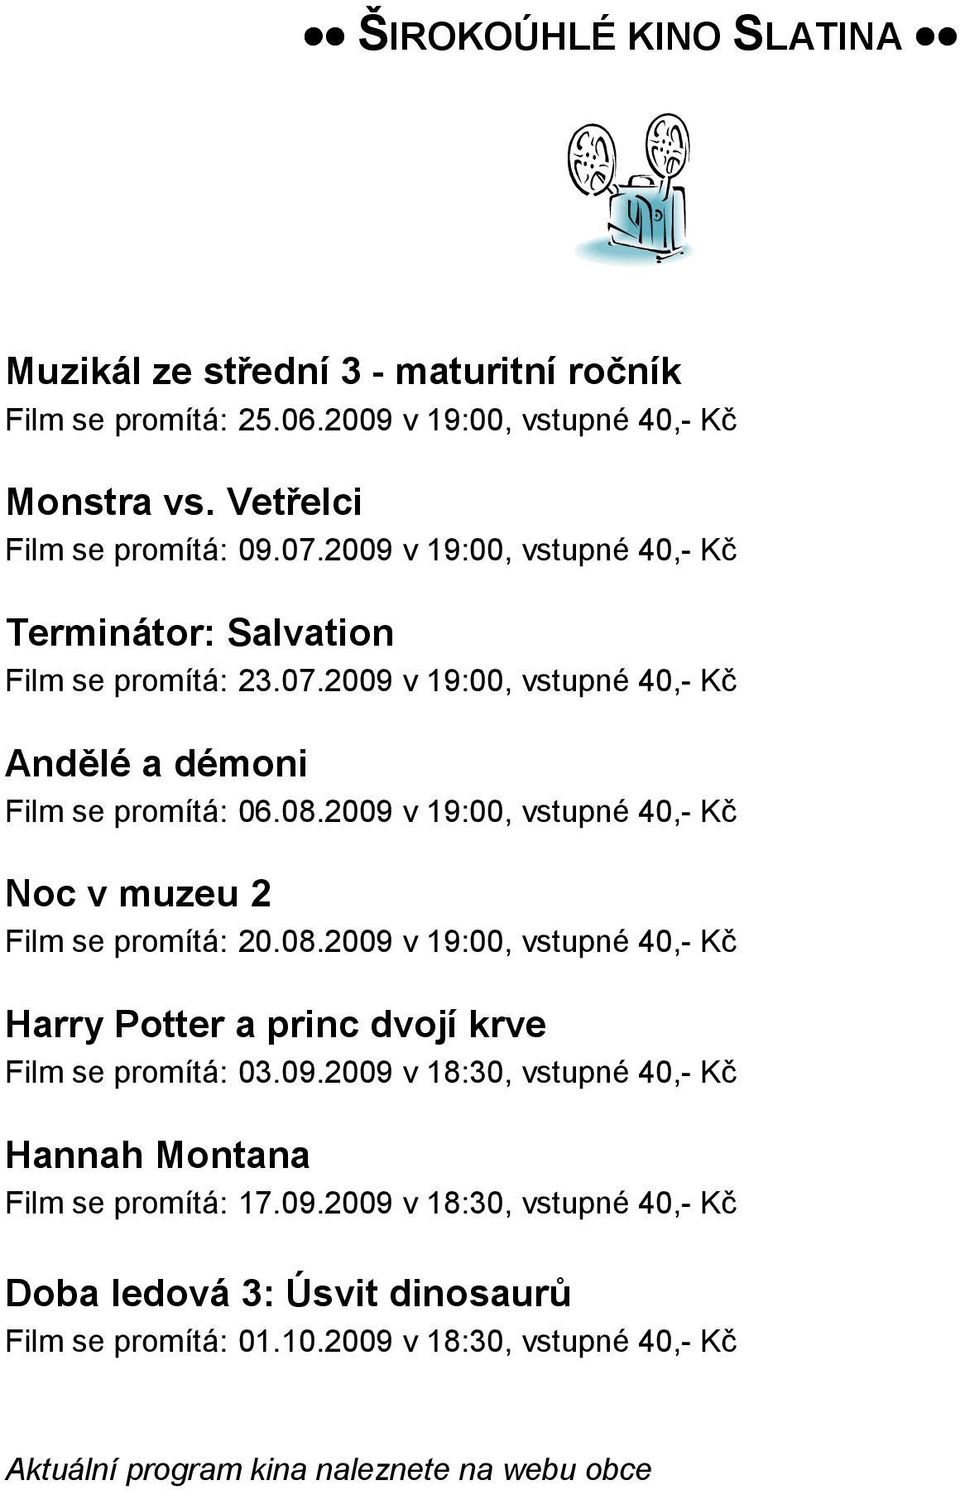 2009 v 19:00, vstupné 40,- Kč Noc v muzeu 2 Film se promítá: 20.08.2009 v 19:00, vstupné 40,- Kč Harry Potter a princ dvojí krve Film se promítá: 03.09.2009 v 18:30, vstupné 40,- Kč Hannah Montana Film se promítá: 17.